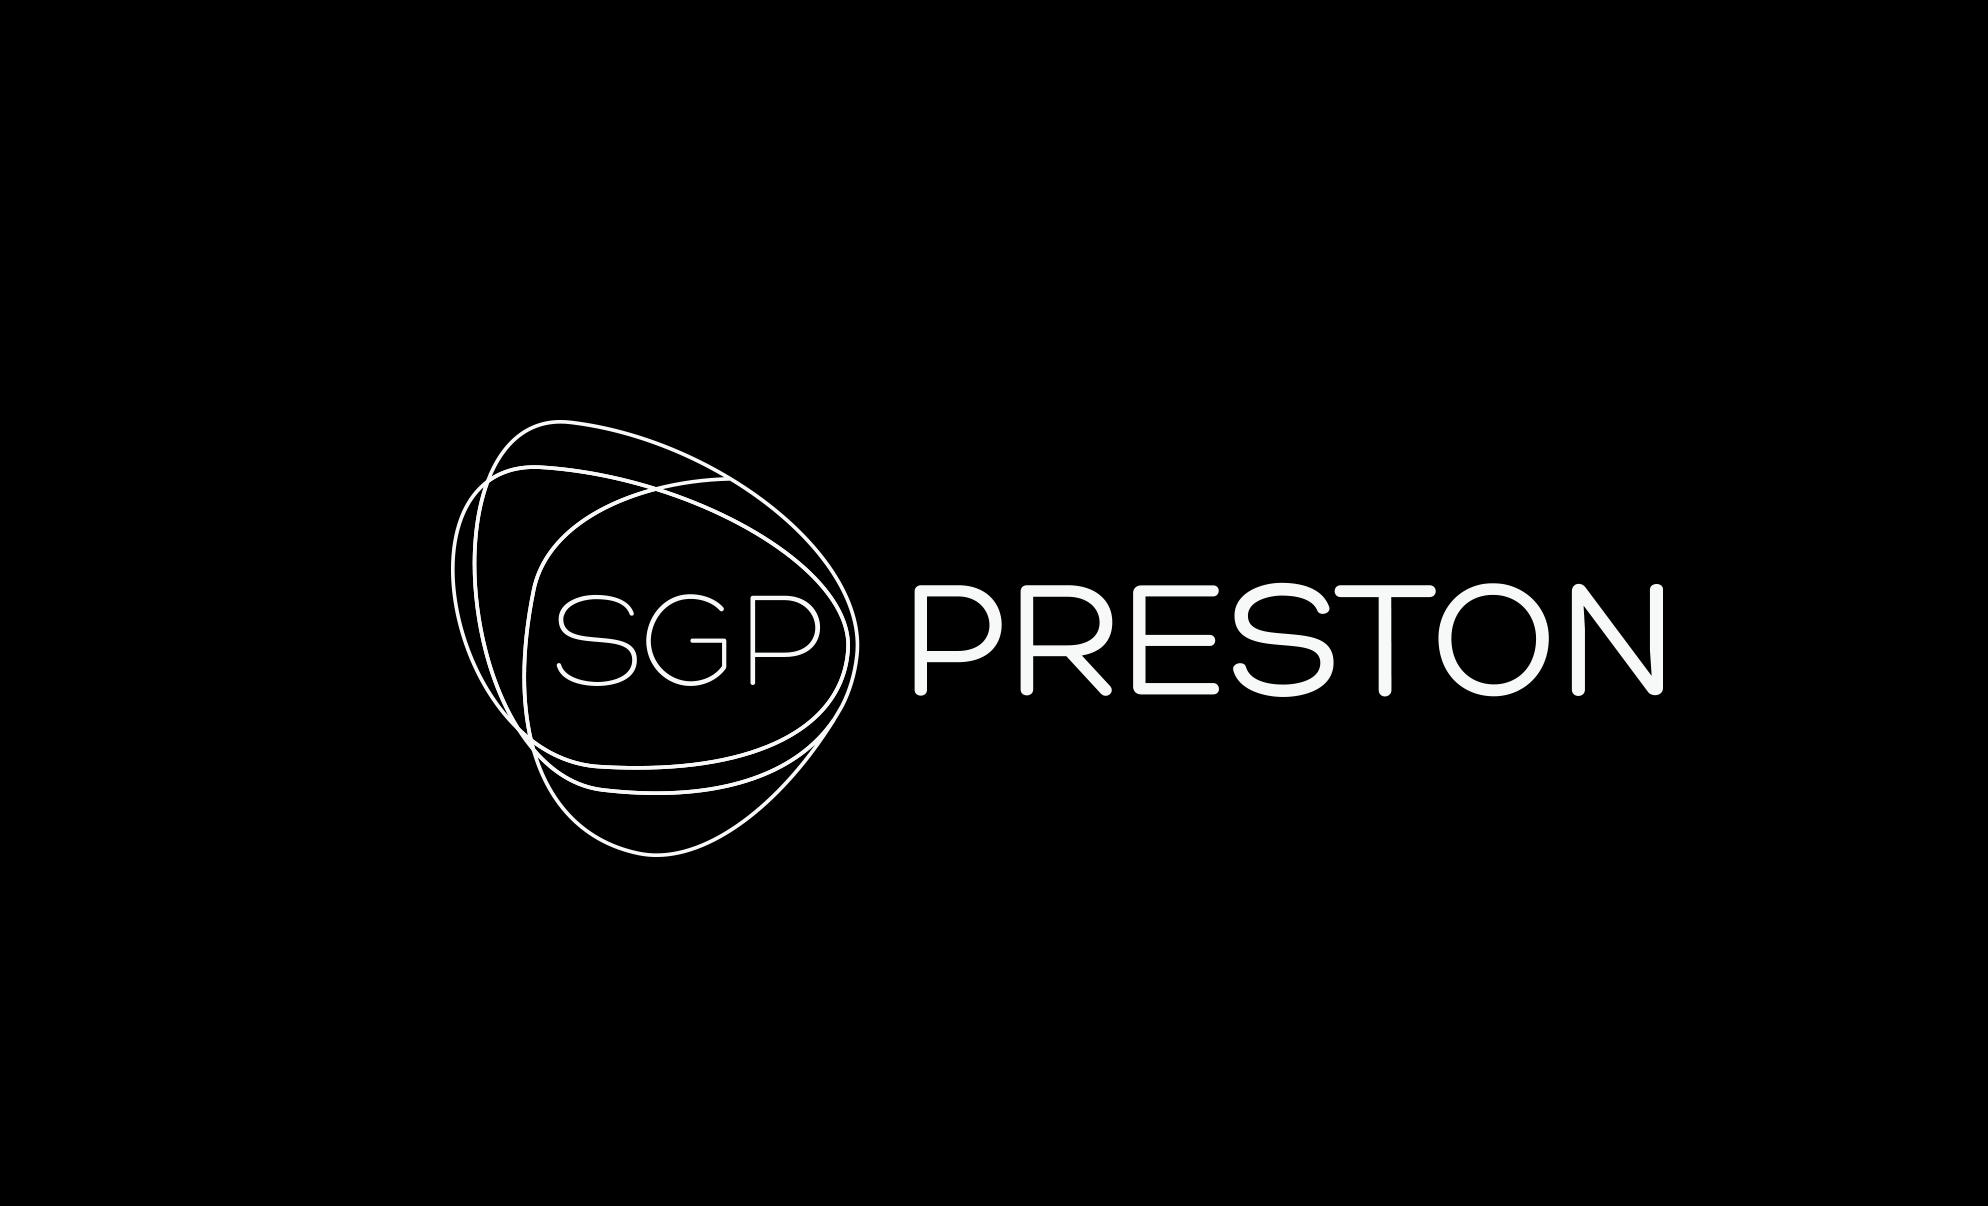 SGP Preston Identity Logotype Logo